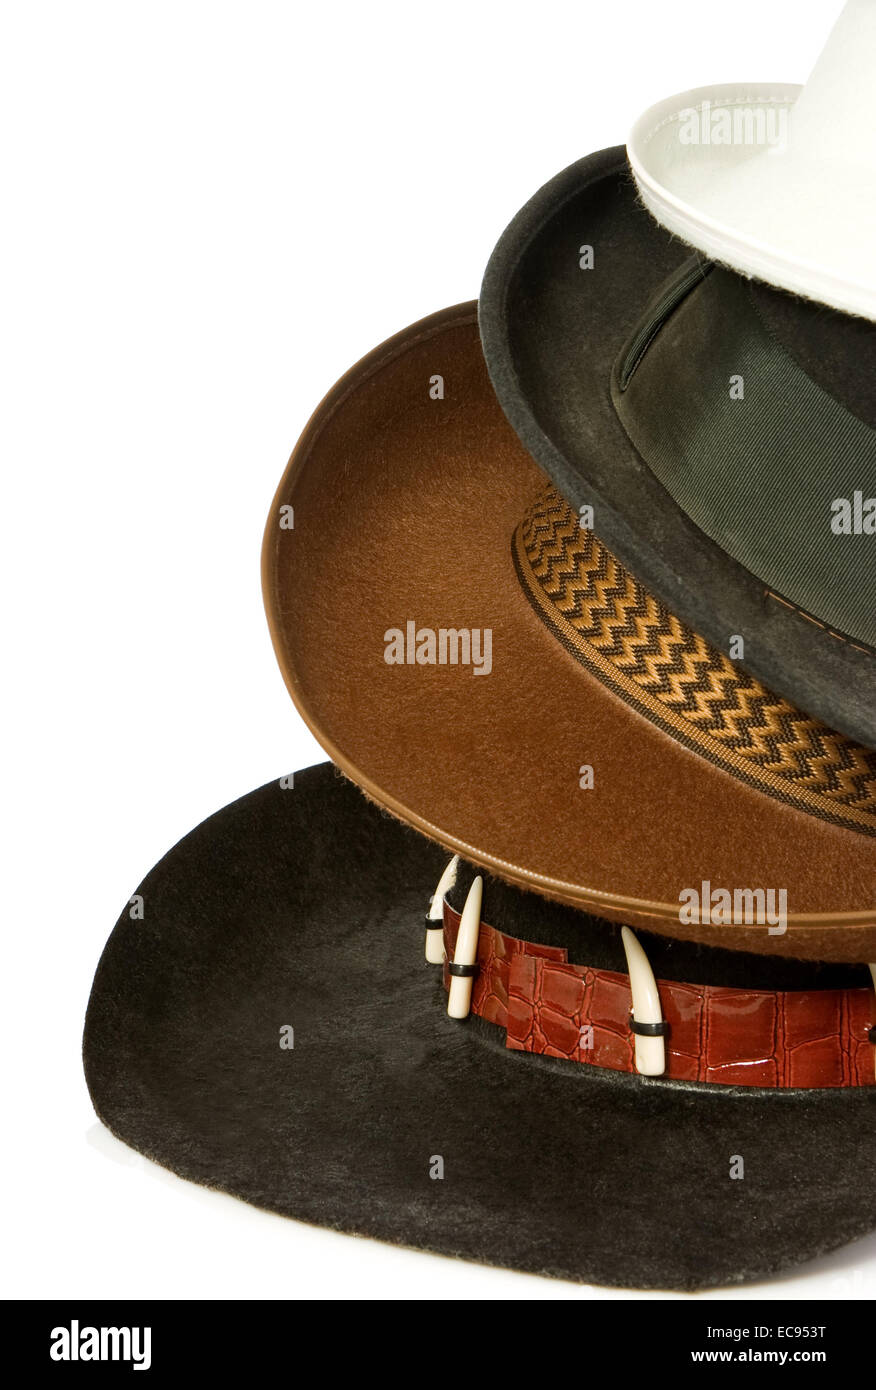 brauner Cowboyhut isoliert auf weißem Hintergrund Stockfoto